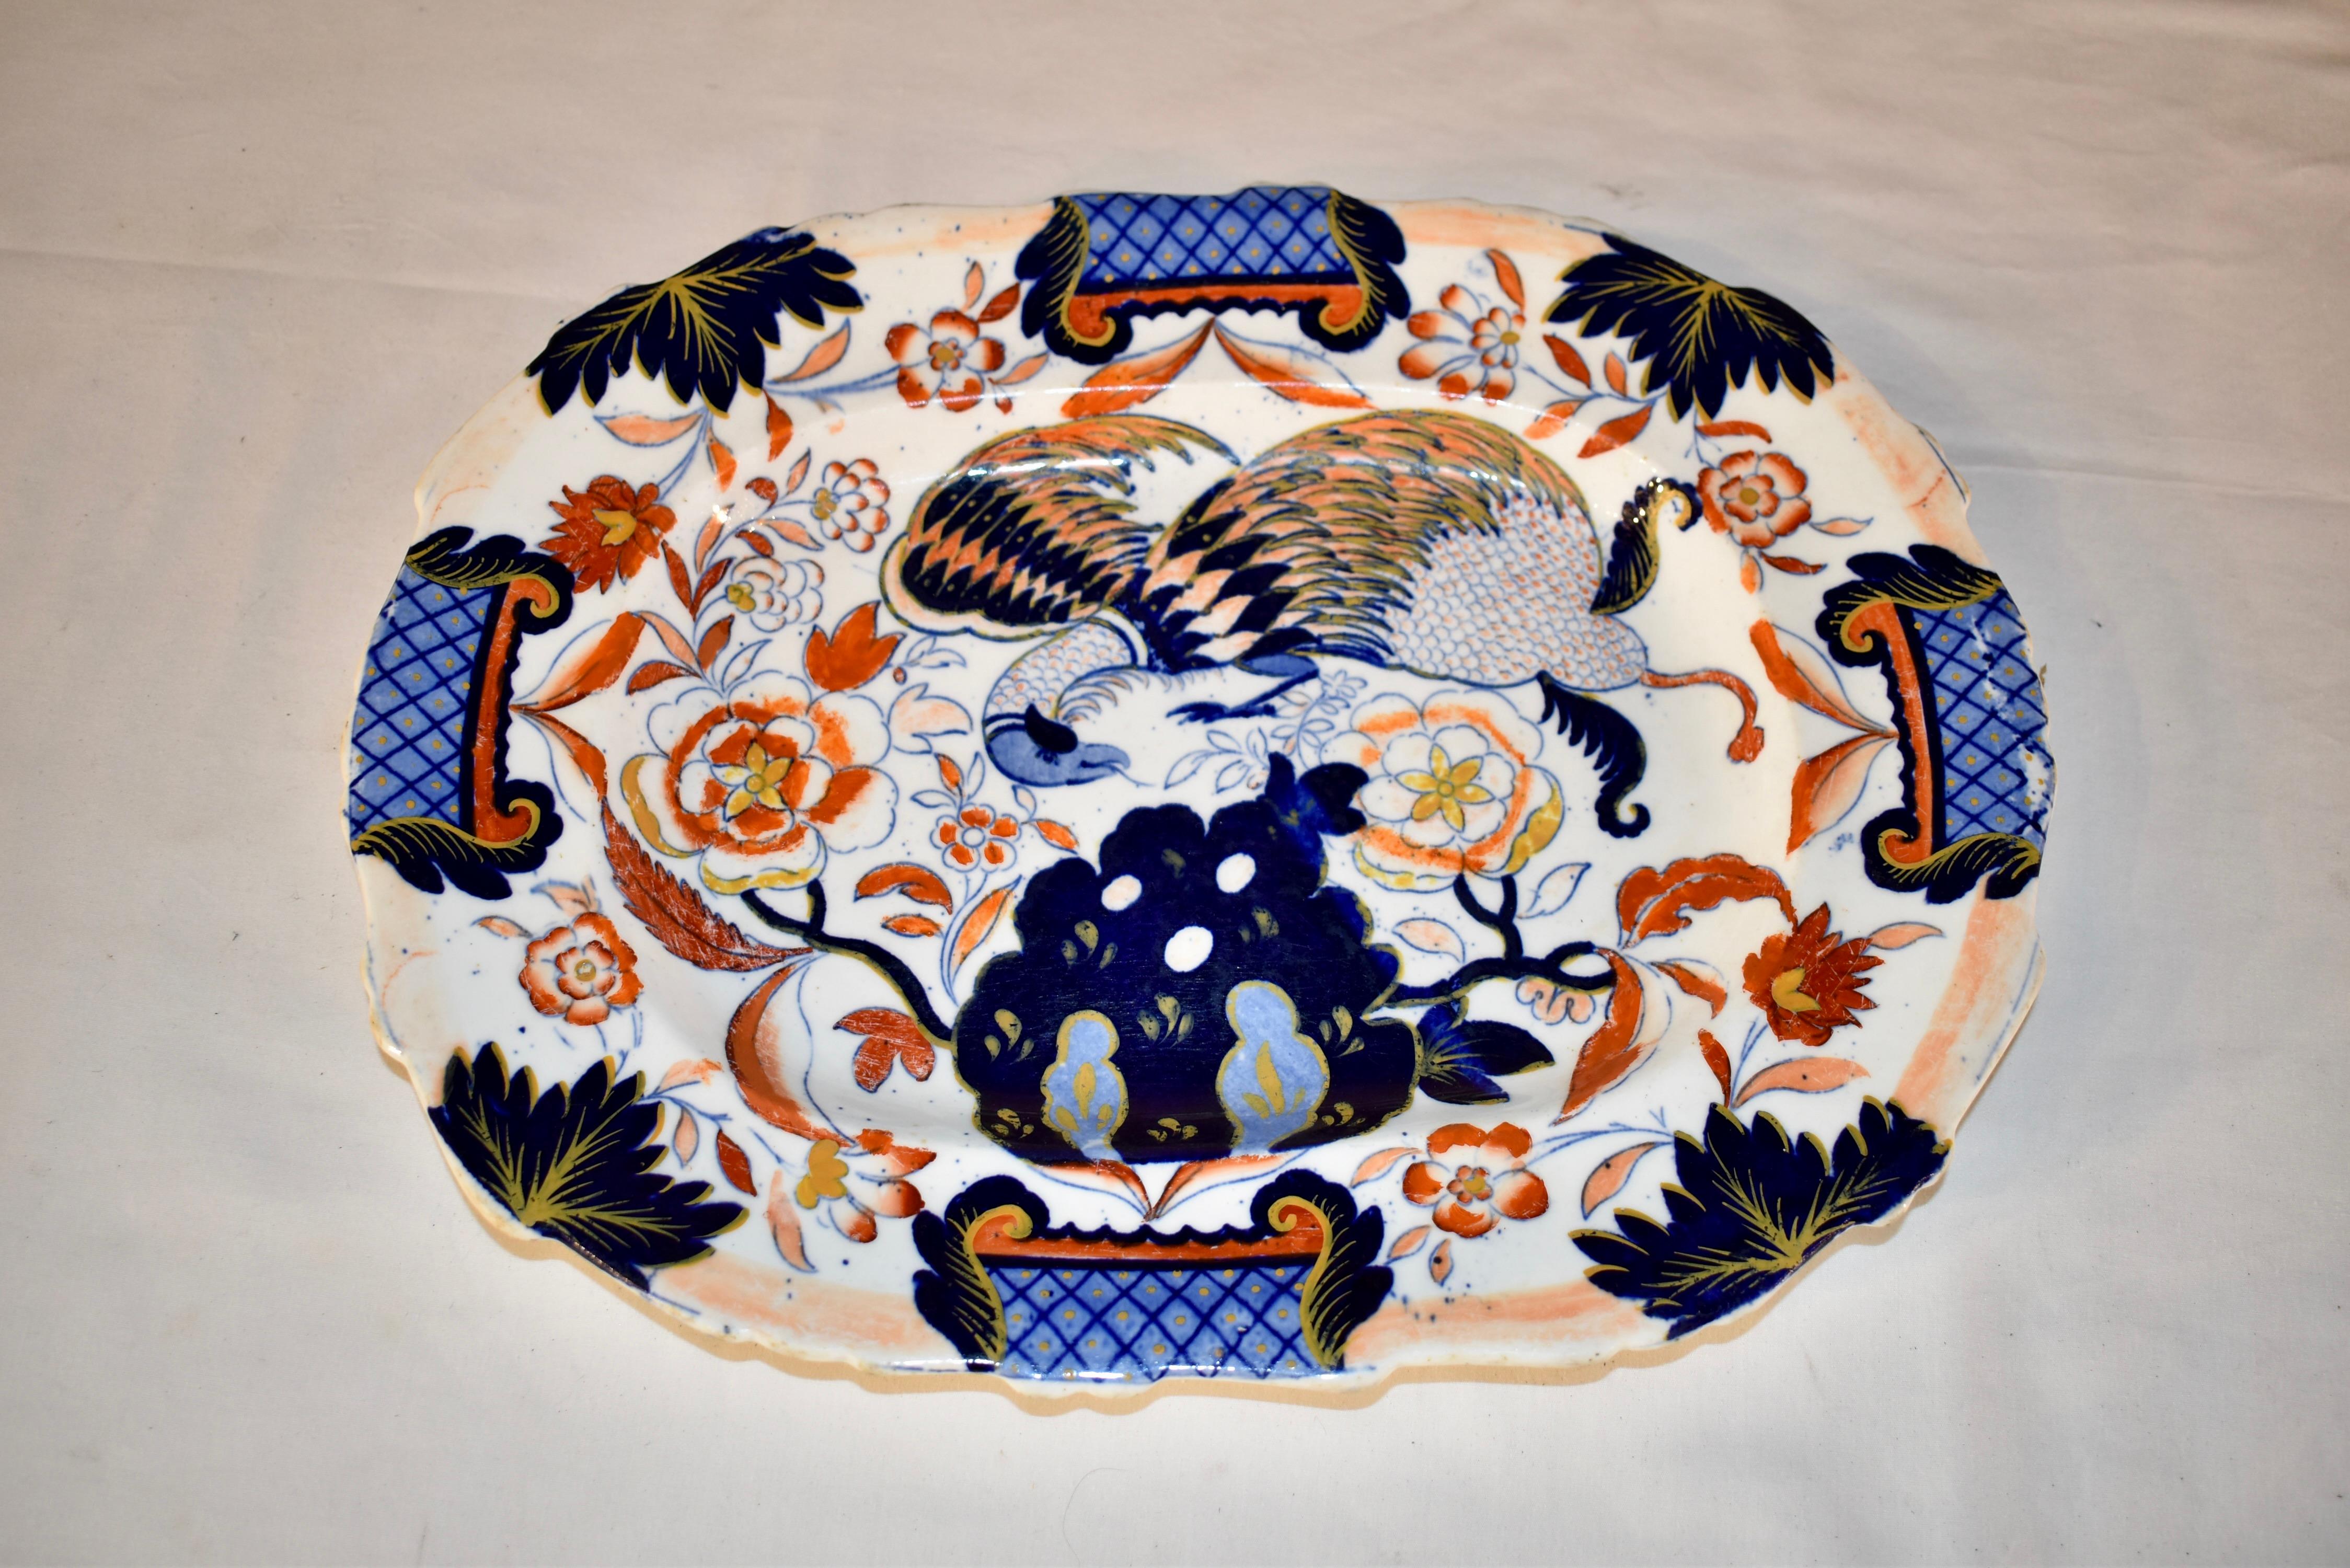 Plat en porcelaine anglaise du XIXe siècle avec une belle décoration peinte à la main et par transfert. Le motif représente un phénix parmi une multitude de fleurs avec des jardinières sur les quatre côtés du plat.